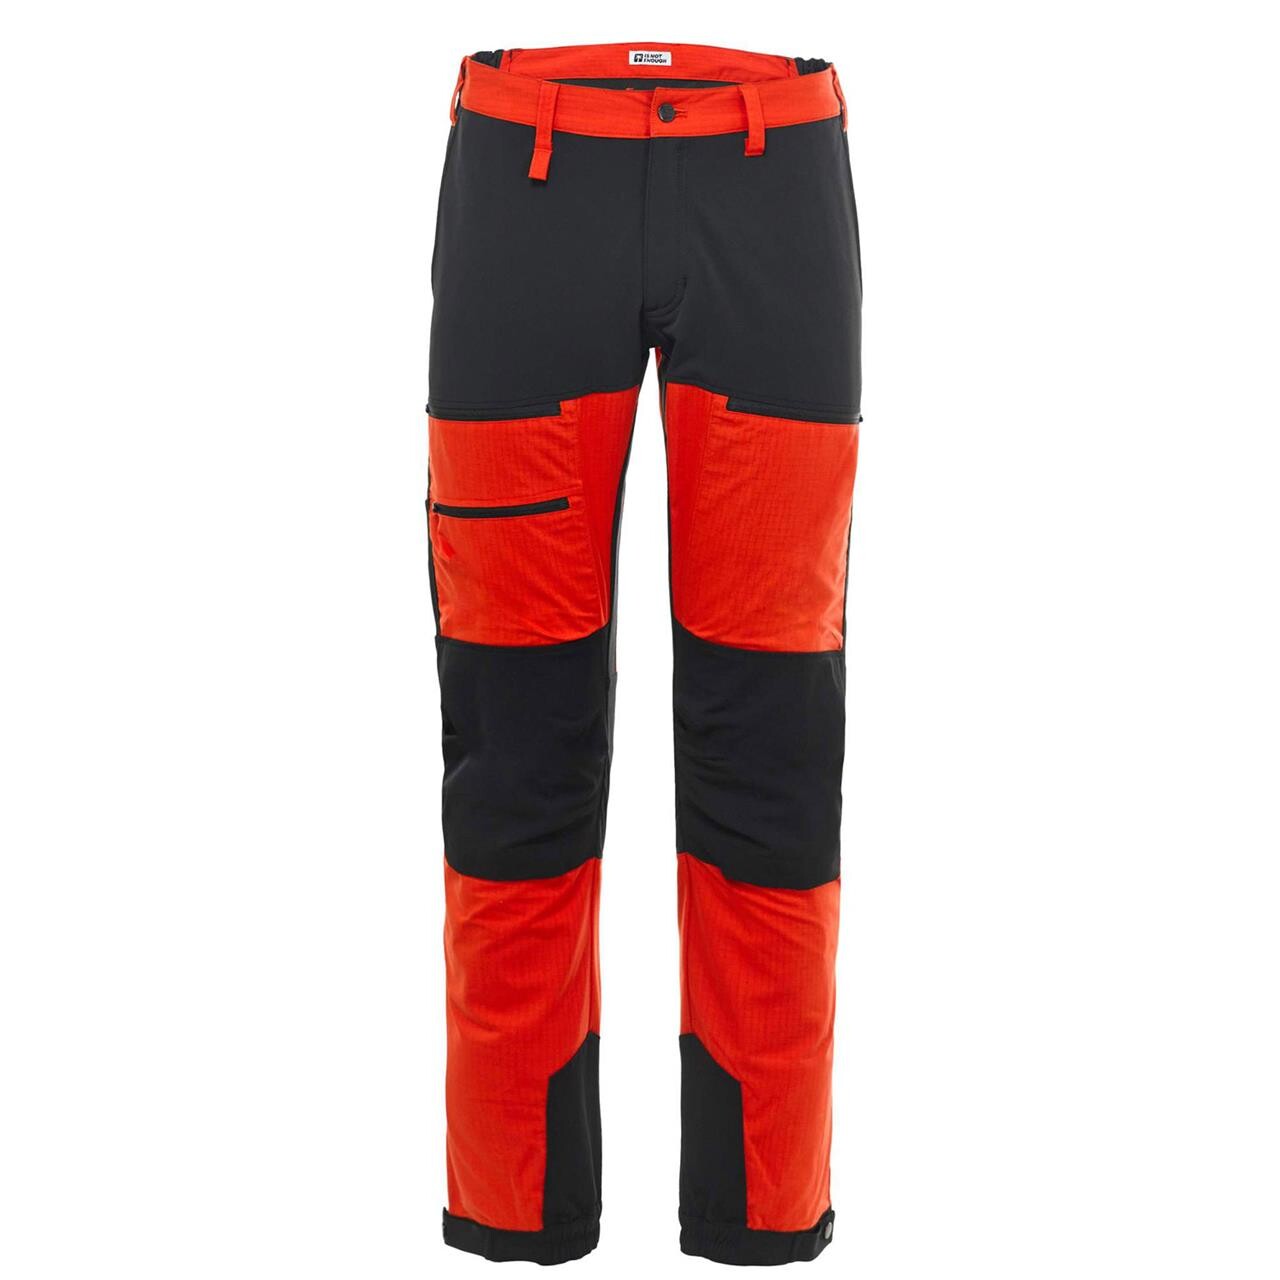 Se Frilufts Mens Ares Trekking Pro Pants (Rød (FIERY RED) X-large) hos Friluftsland.dk